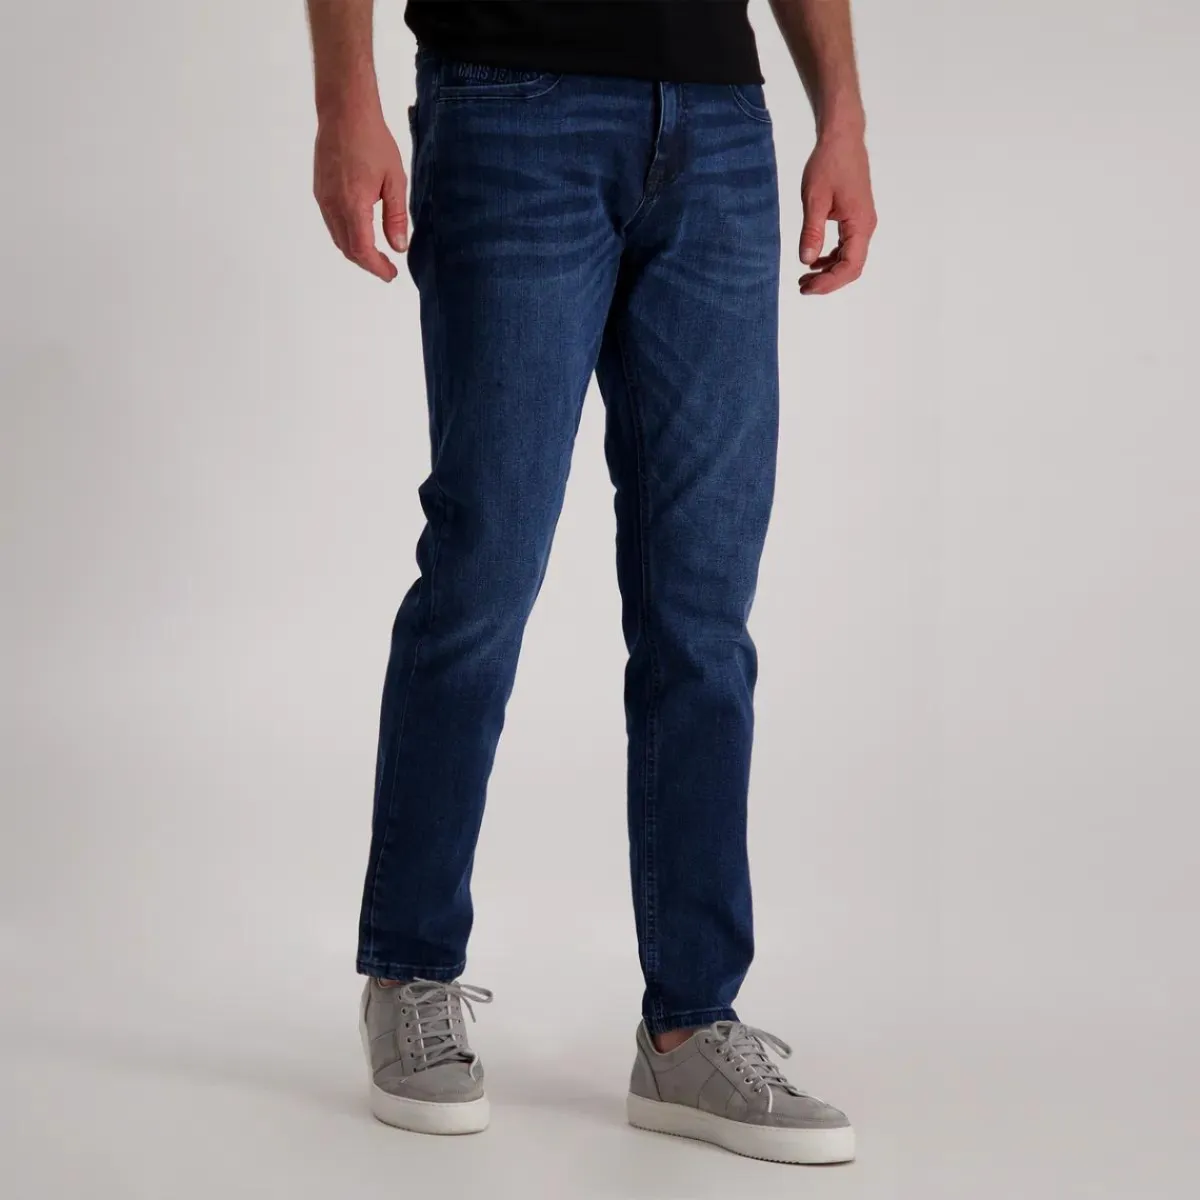 afschaffen gewoontjes Hover Cars Jeans heren grote collectie online bestellen | Broeken Binkie